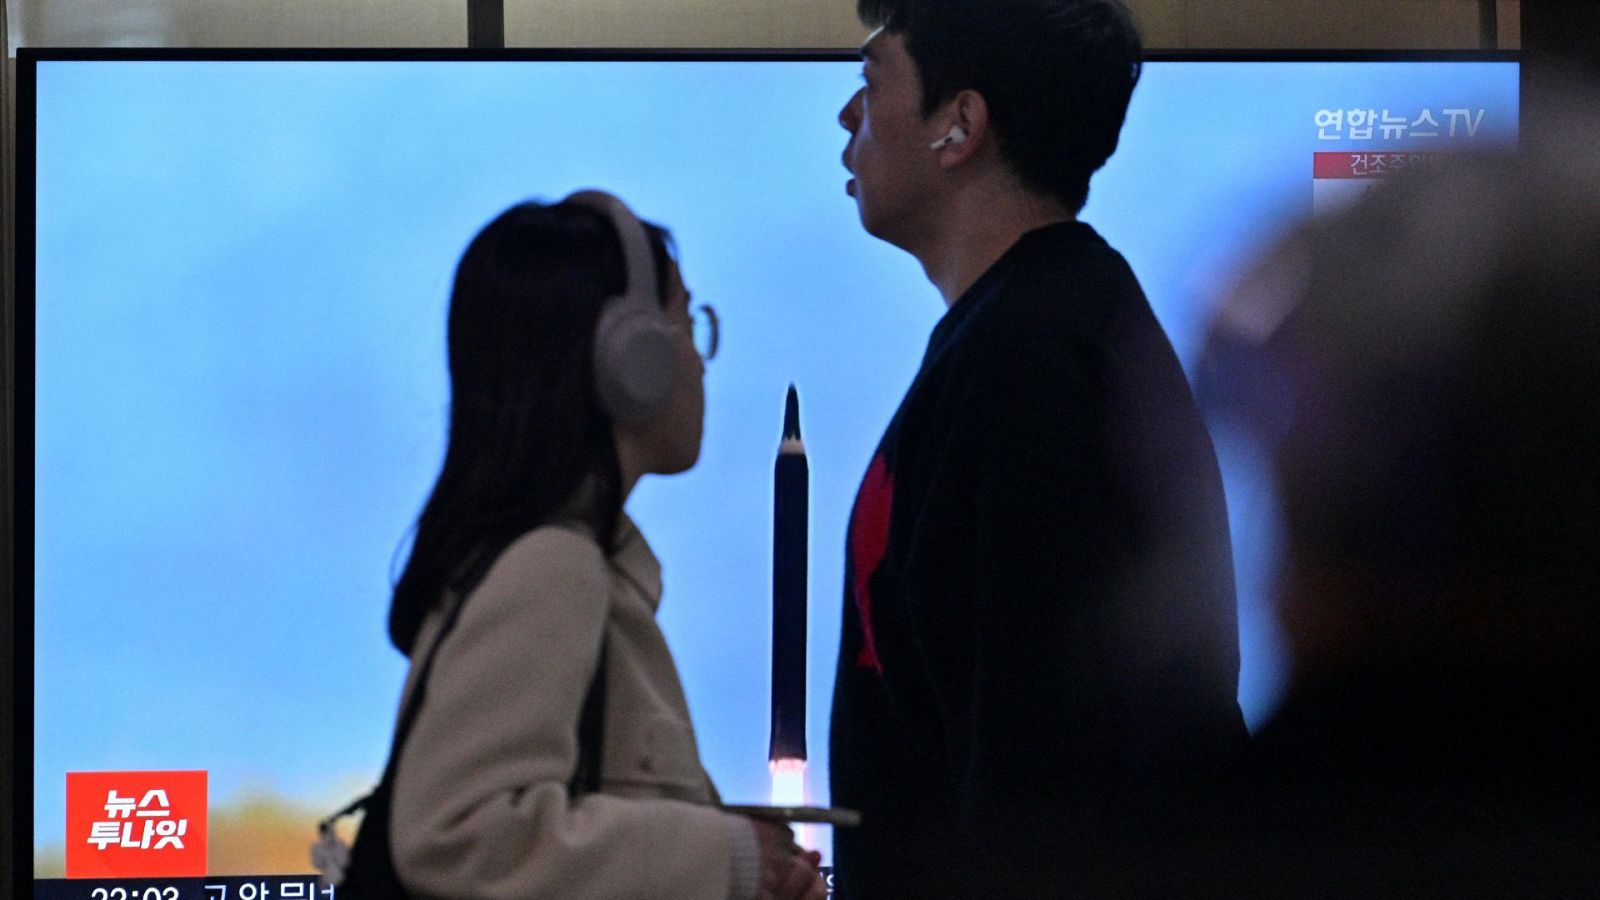 Dos ciudadanos surcoreanos ven en la televisión el lanzamiento de un misil norcoreano